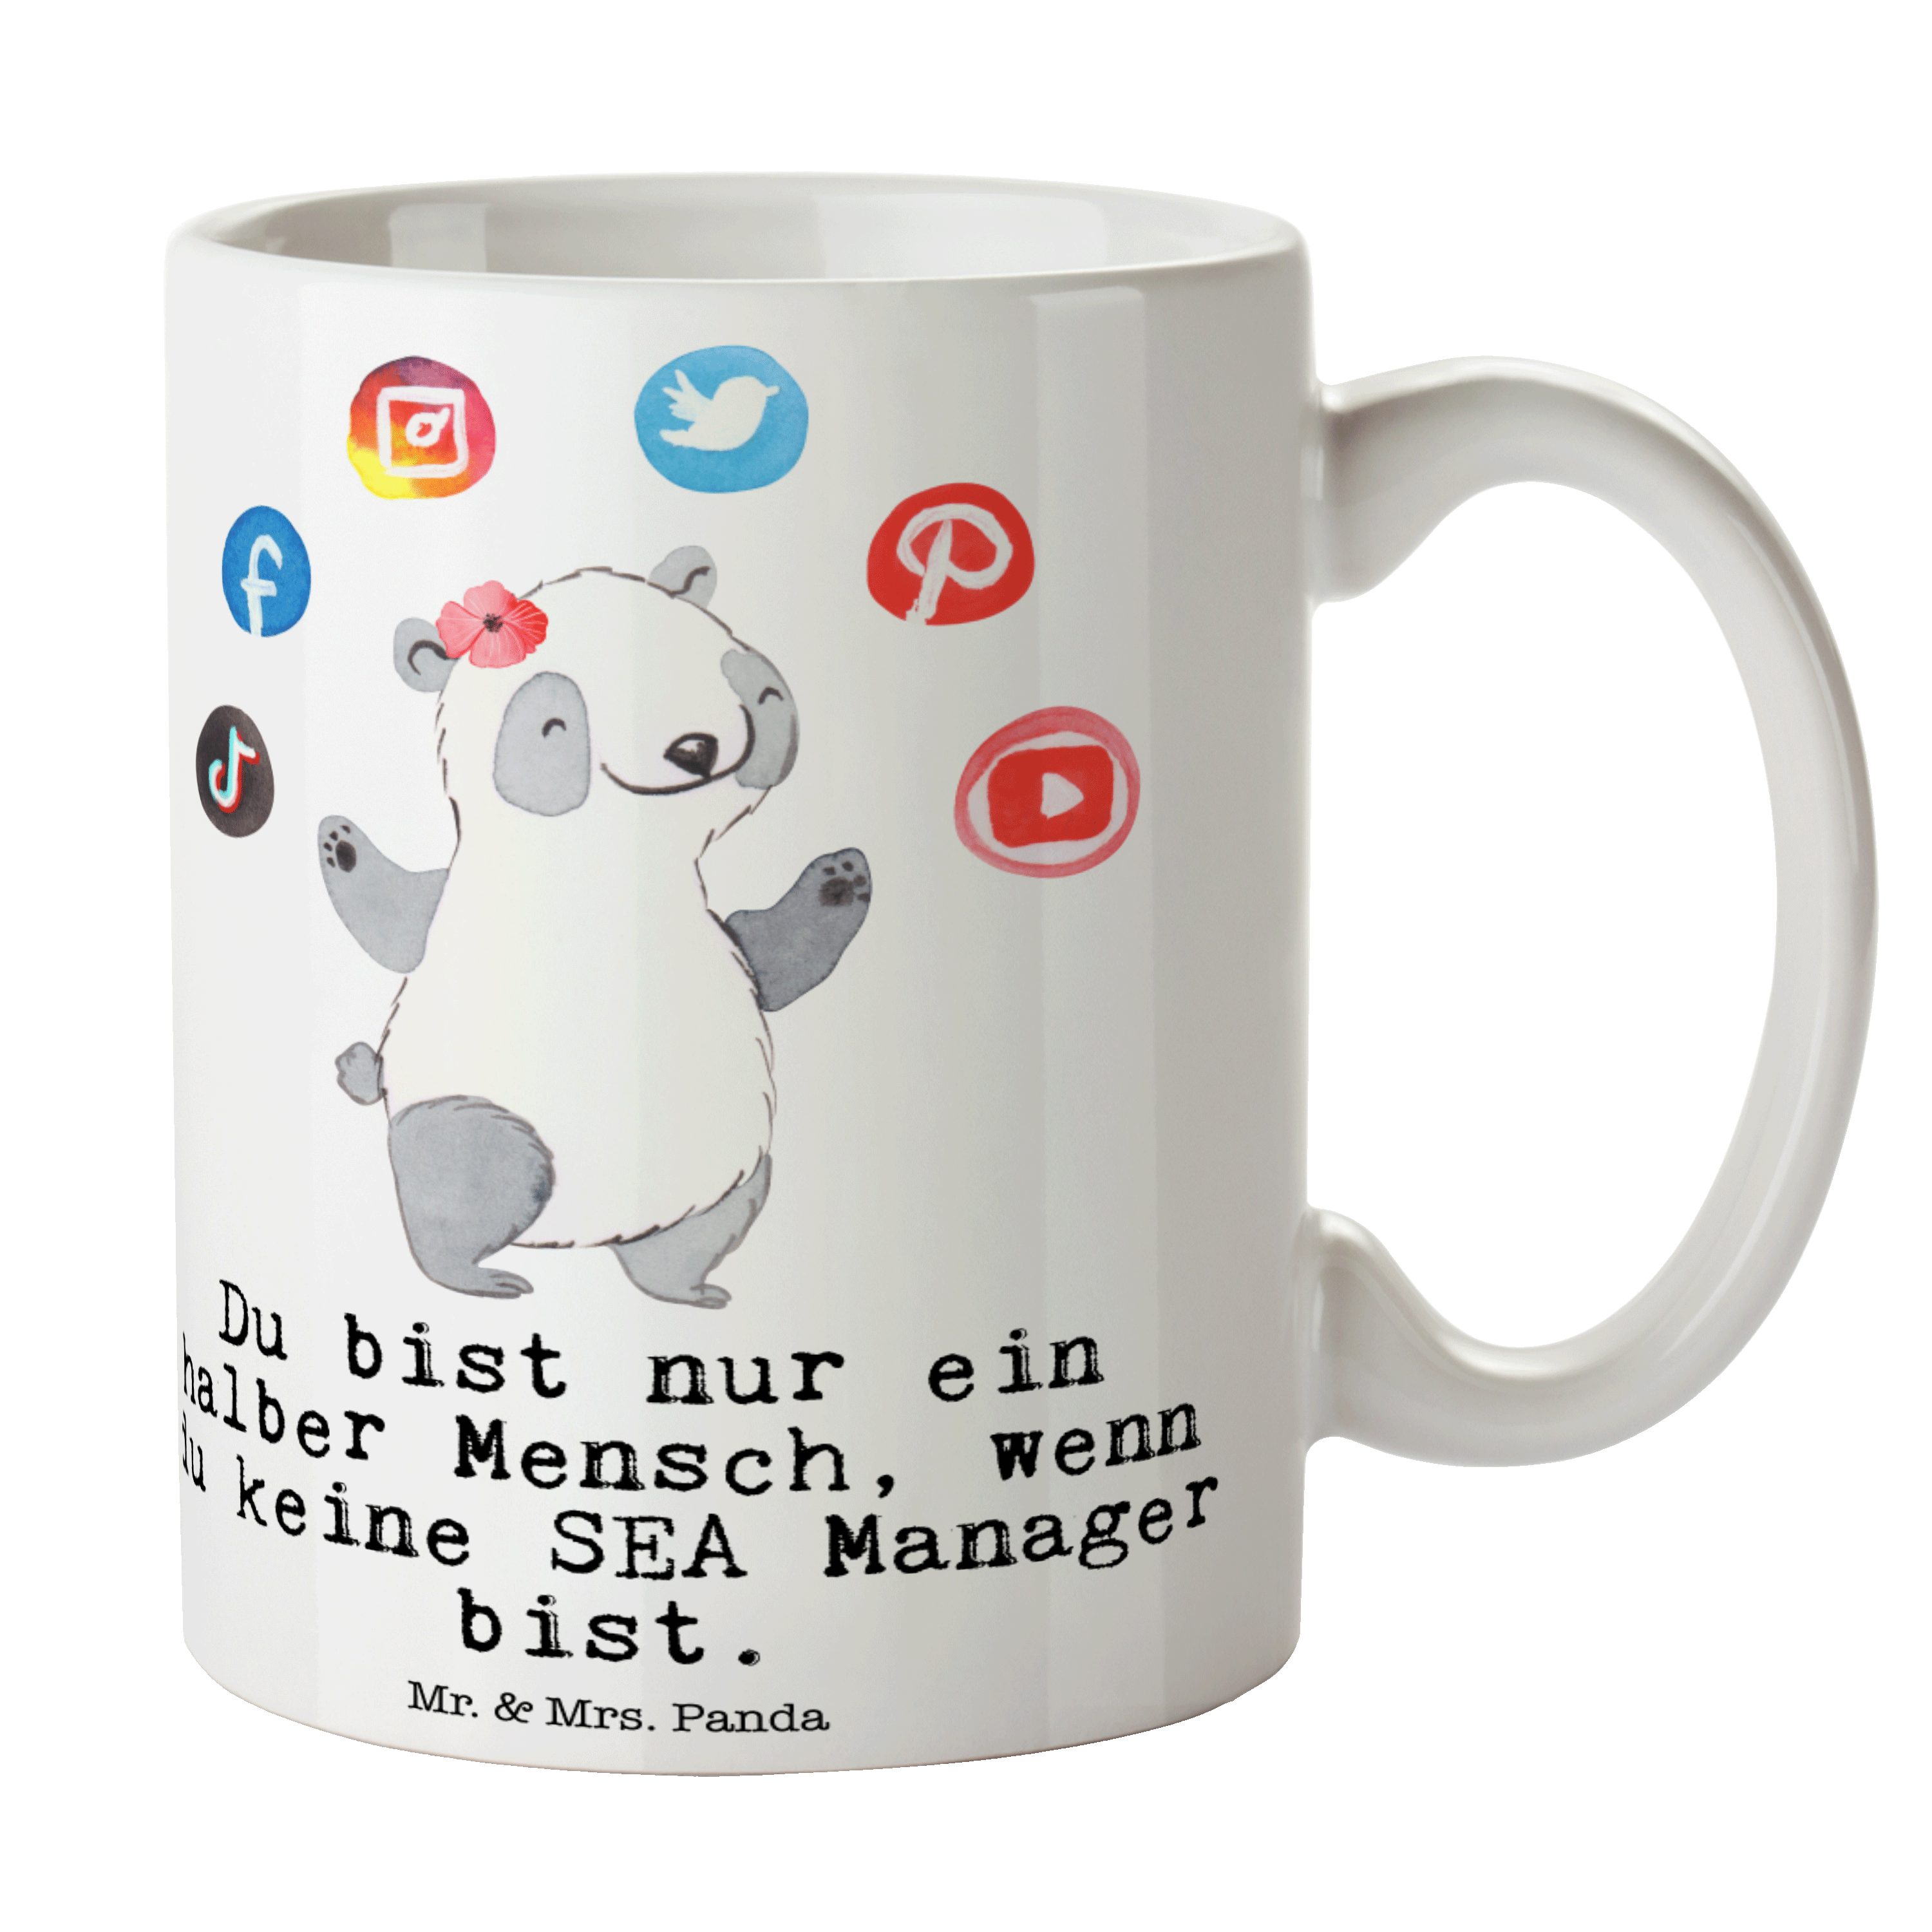 Mr. & Mrs. Panda Tasse SEA Manager mit Herz - Weiß - Geschenk, Teetasse, Suchmaschinenwerbun, Keramik